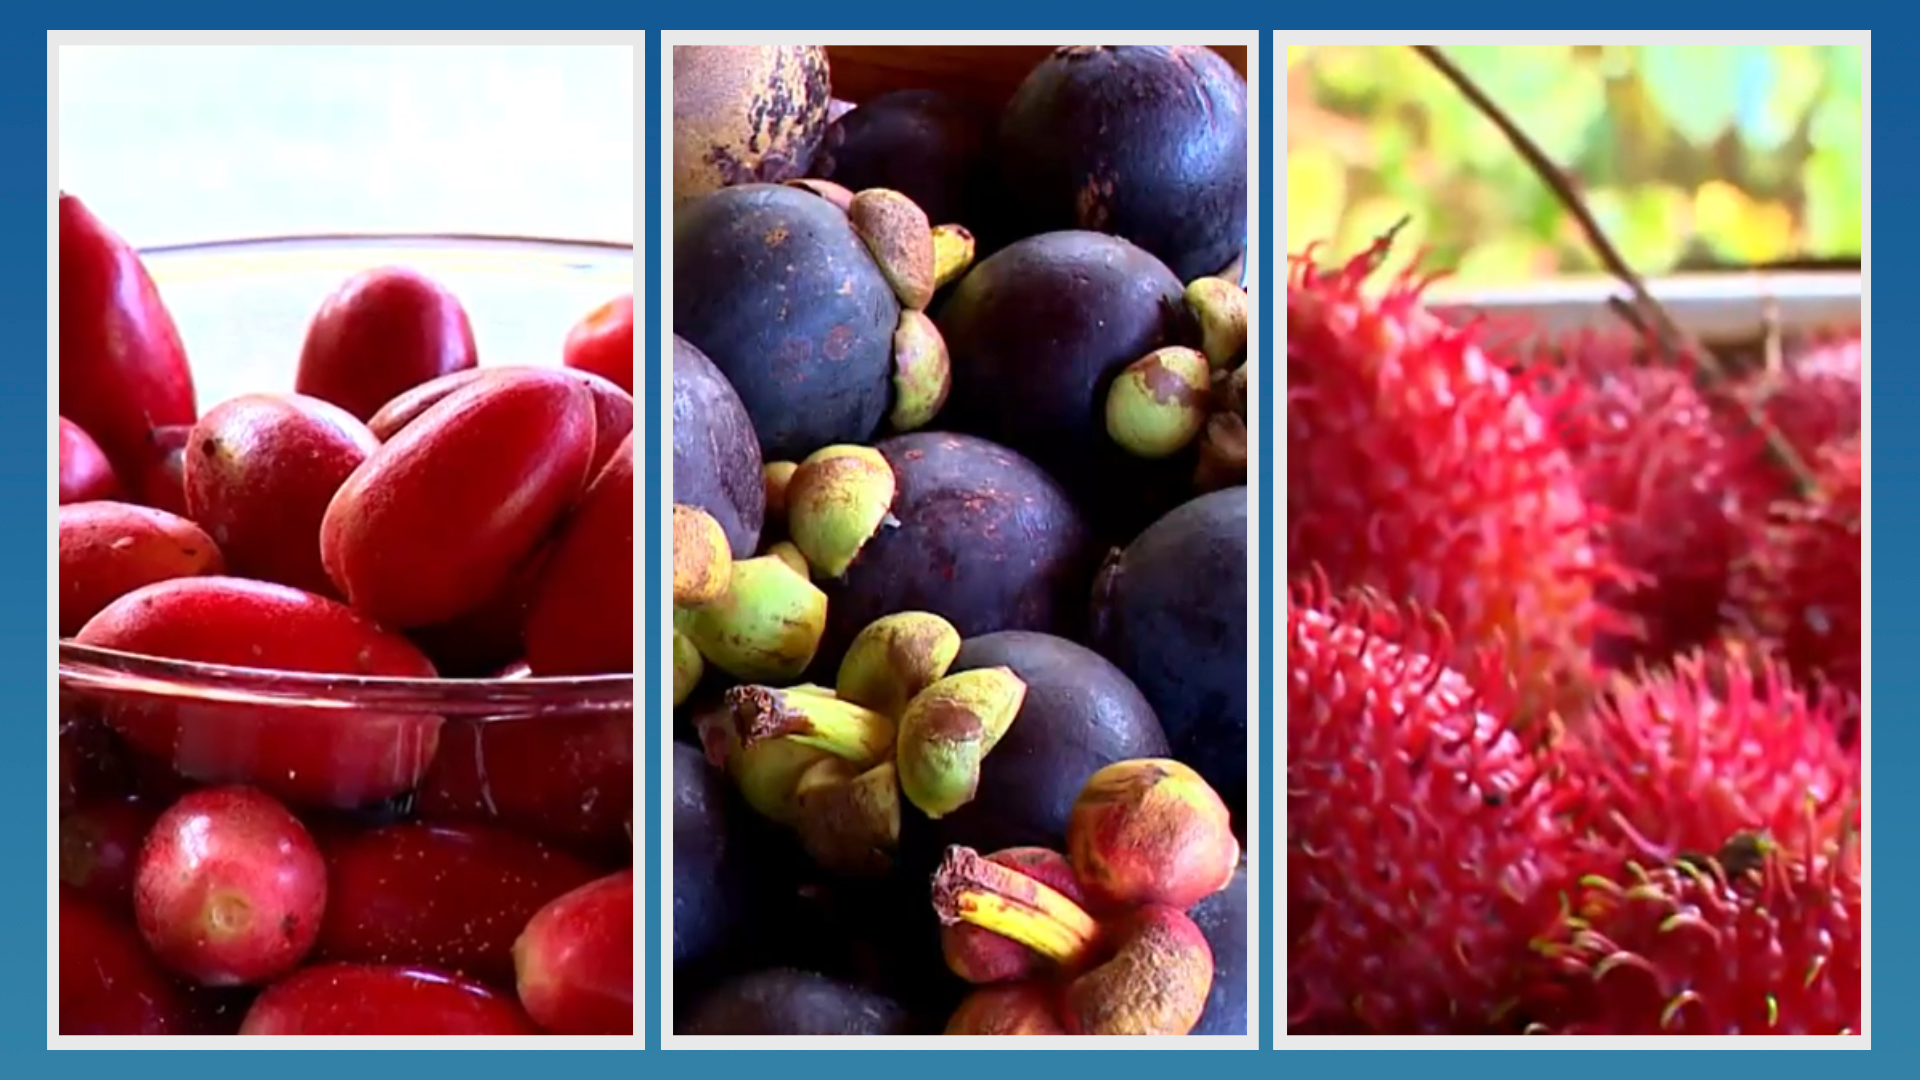 O fruticultor Edmar Campagna comercializa e produz 'delícias' incomuns em feiras livre e nas bancas de supermercados. Tem até fruta do milagre; conheça alguma delas